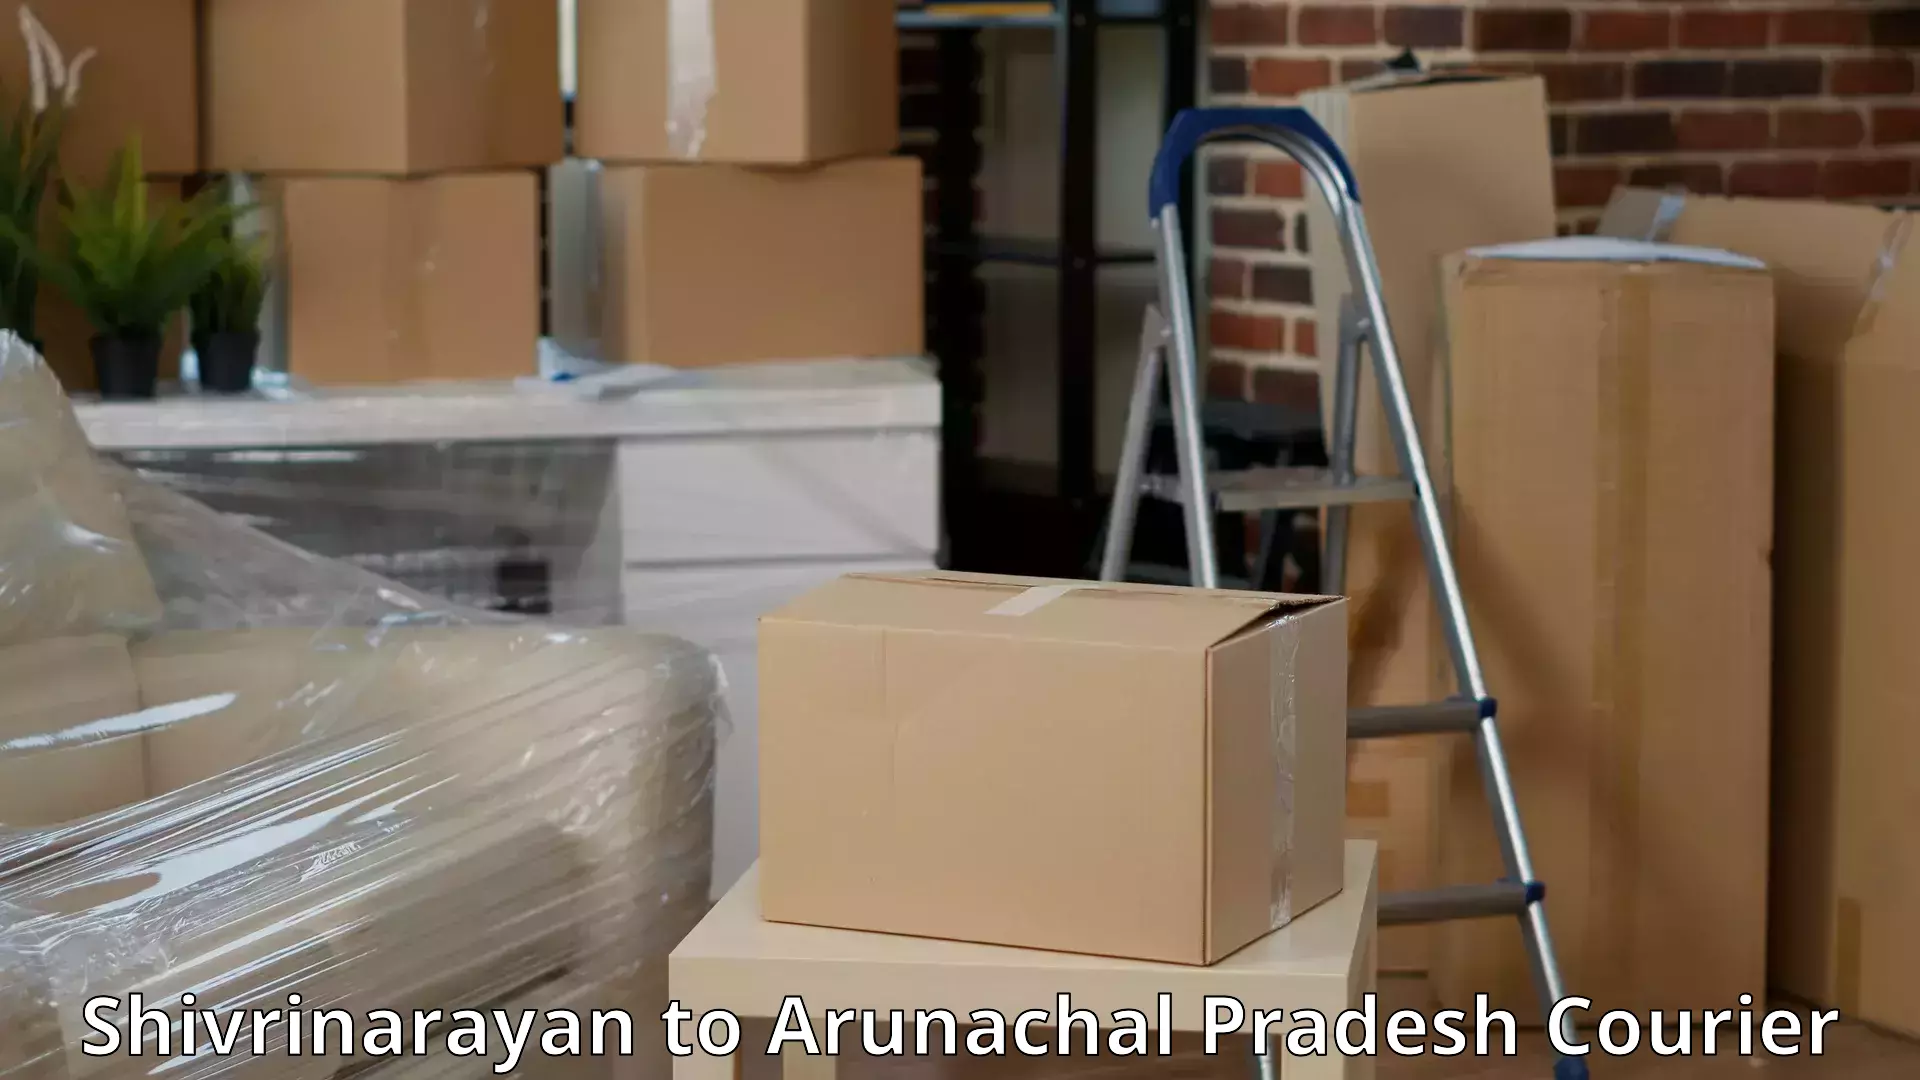 Door-to-door relocation services Shivrinarayan to Arunachal Pradesh